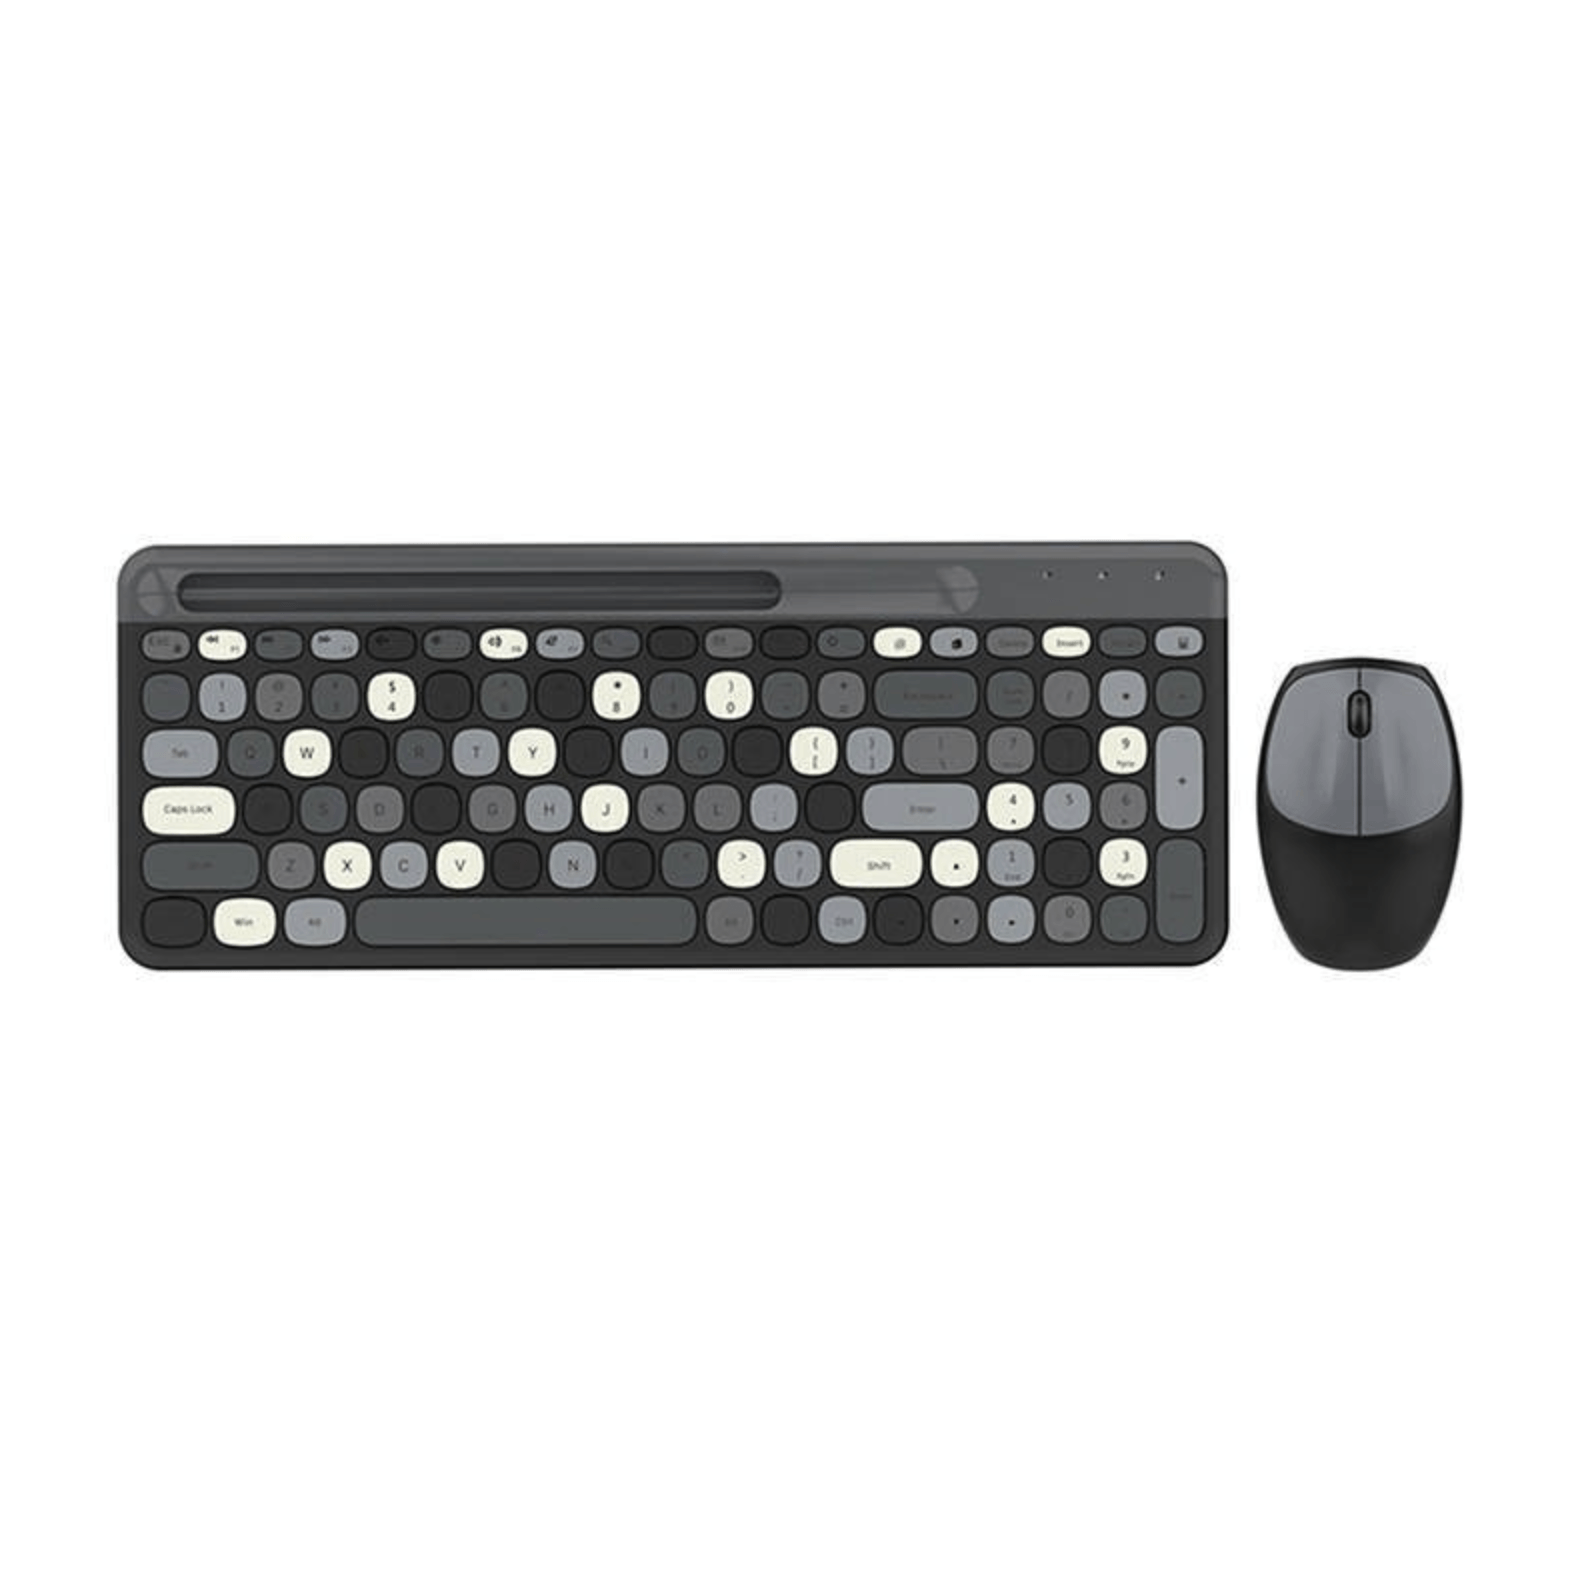 Kit tastatura multimedia si mouse wireless, 2.4 GHz, 1600 DPI, 3 butoane si scroll, 888, Negru, WRB-BBL6815